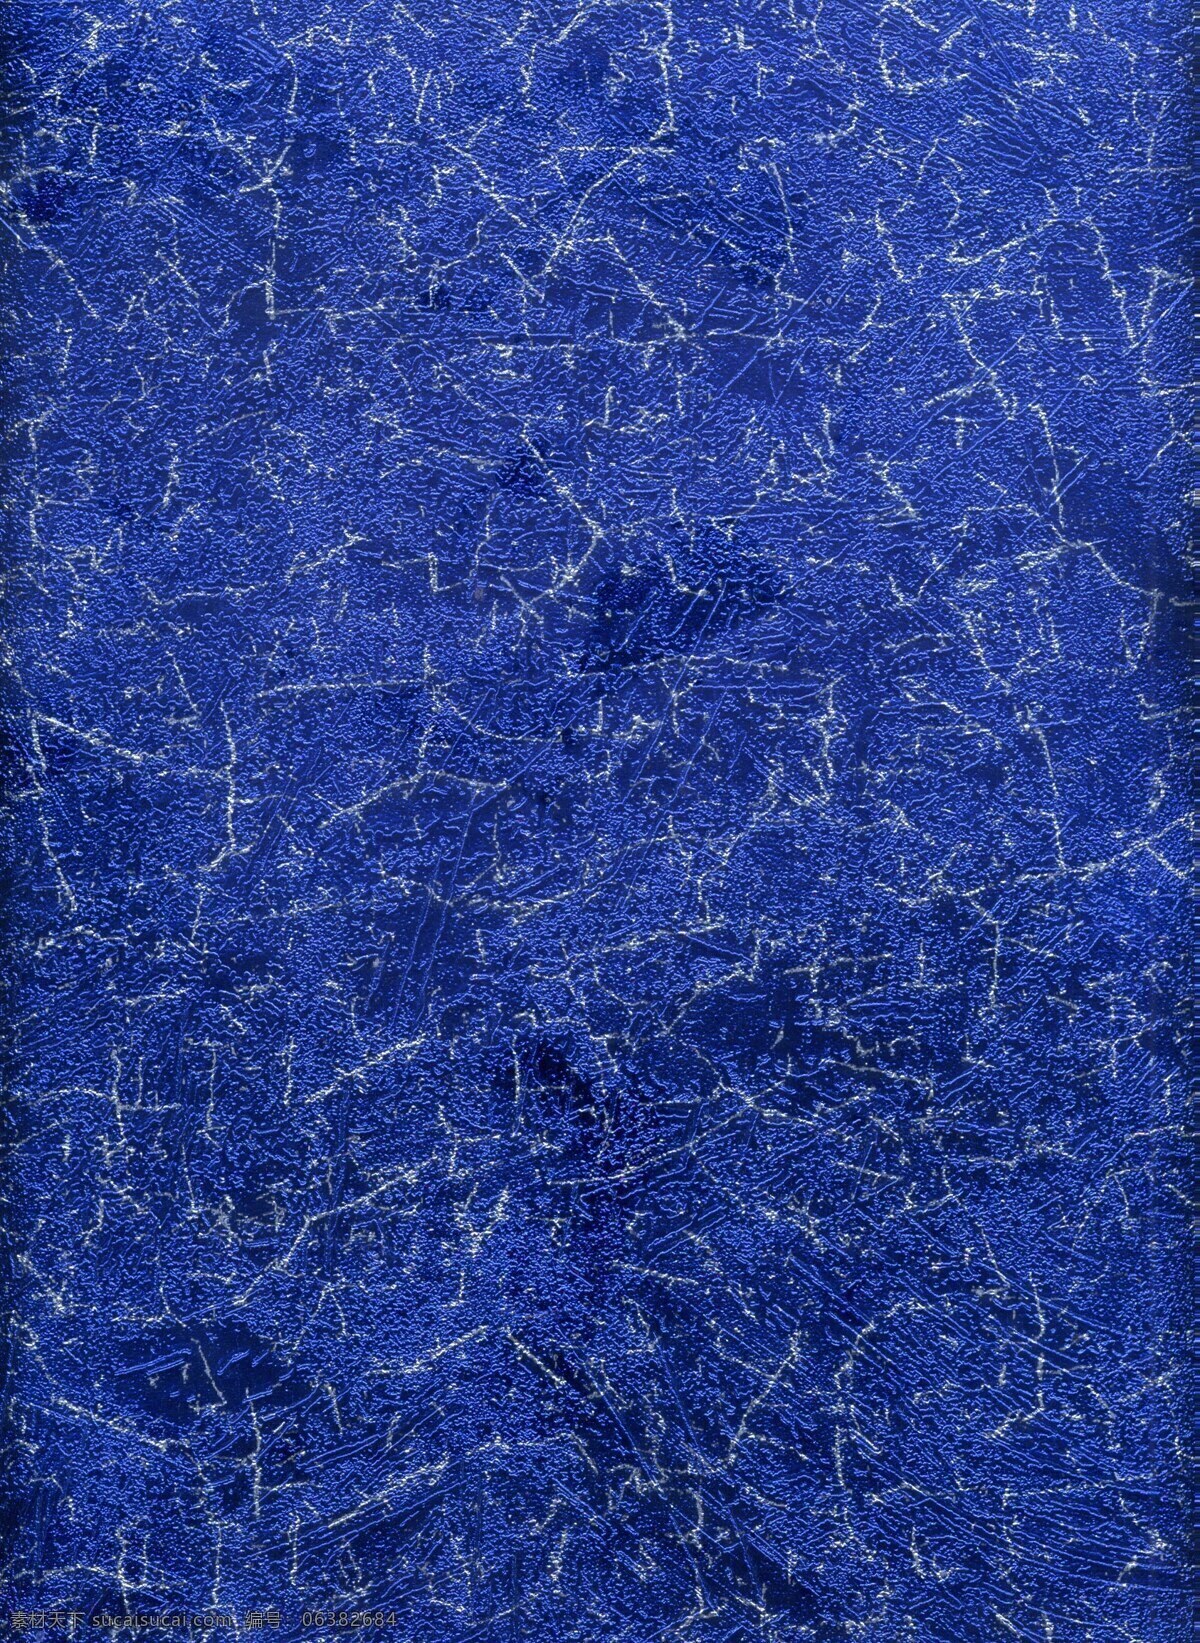 蓝色肌理 斑驳 肌理 底纹 景泰蓝 青花 纹路 龟裂 地板 背景 细纹 分裂 抽象底纹 底纹边框